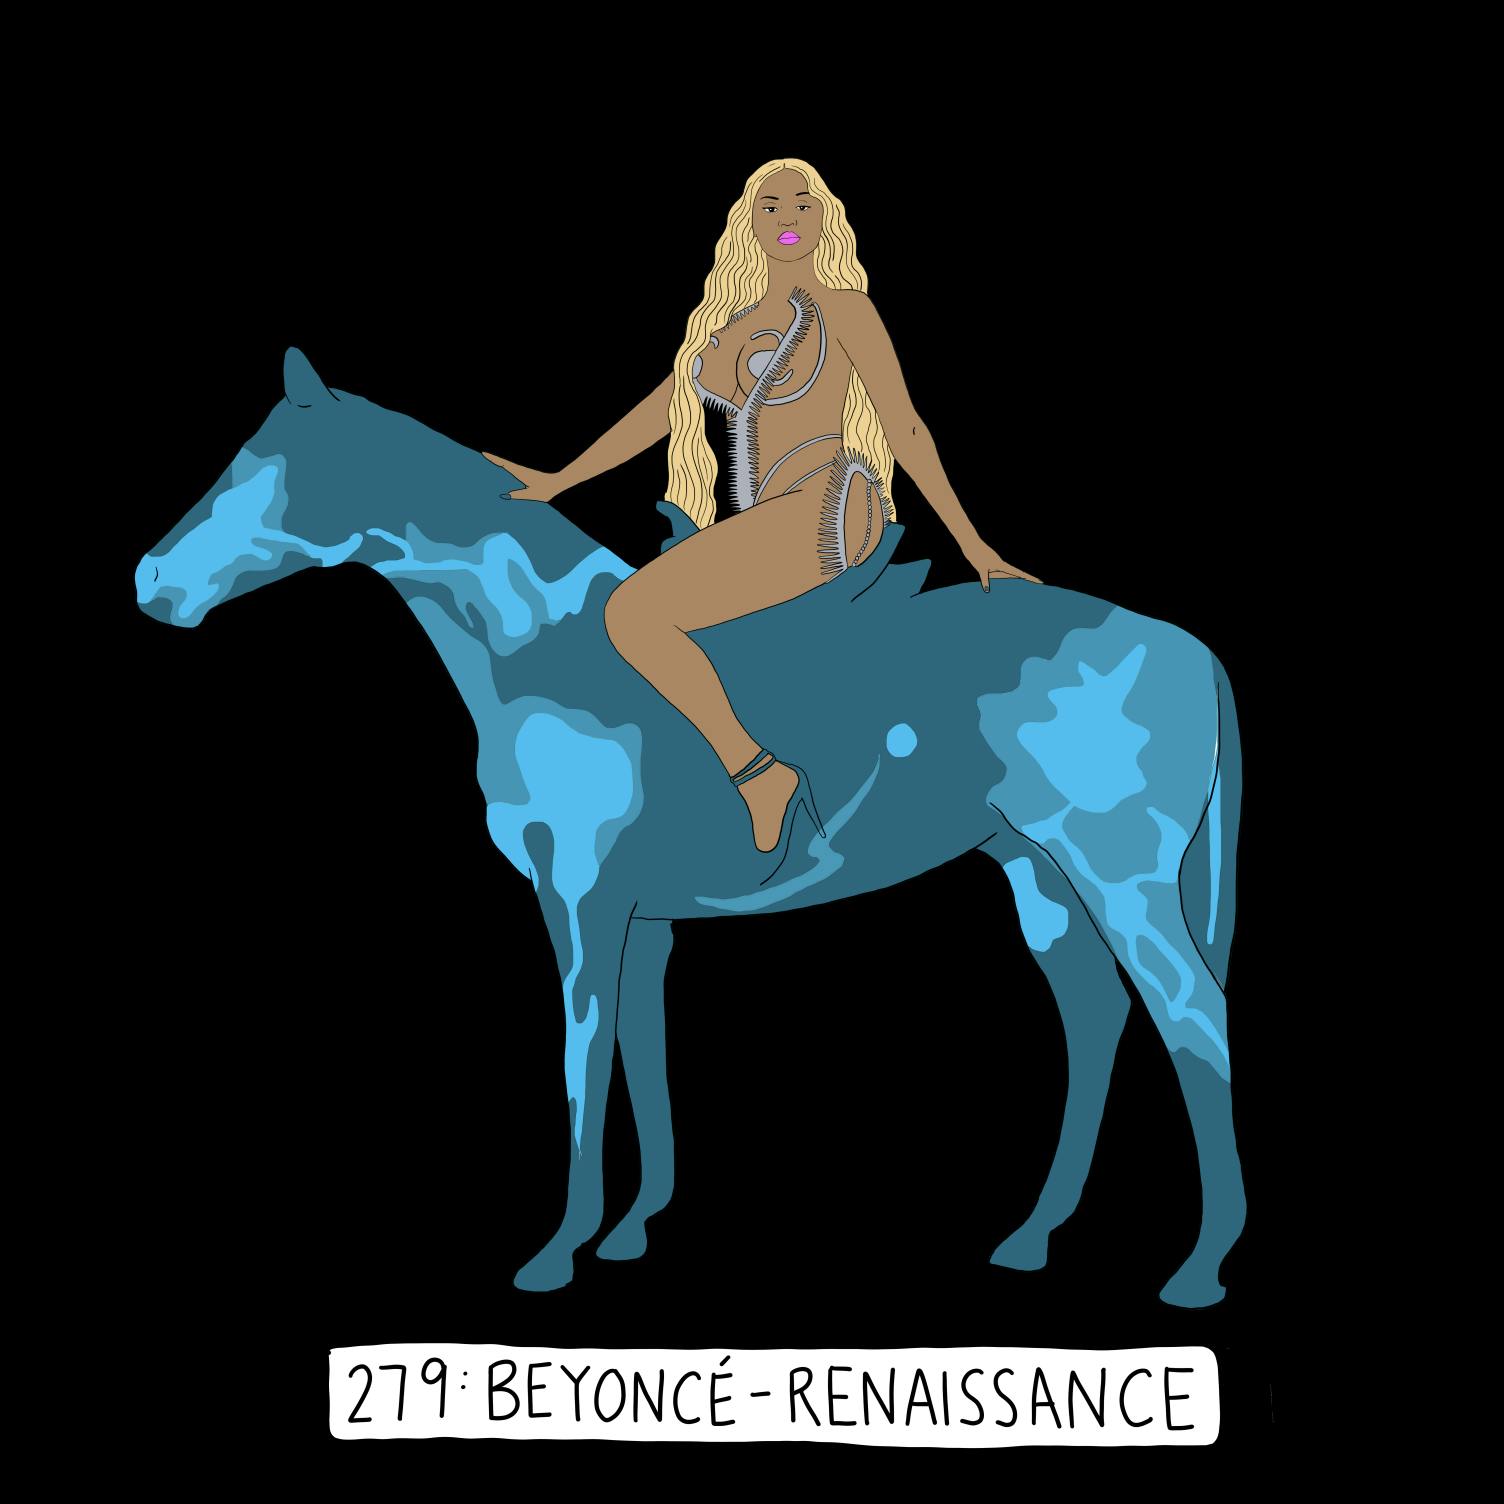 Beyoncé's ‘Renaissance’ Era